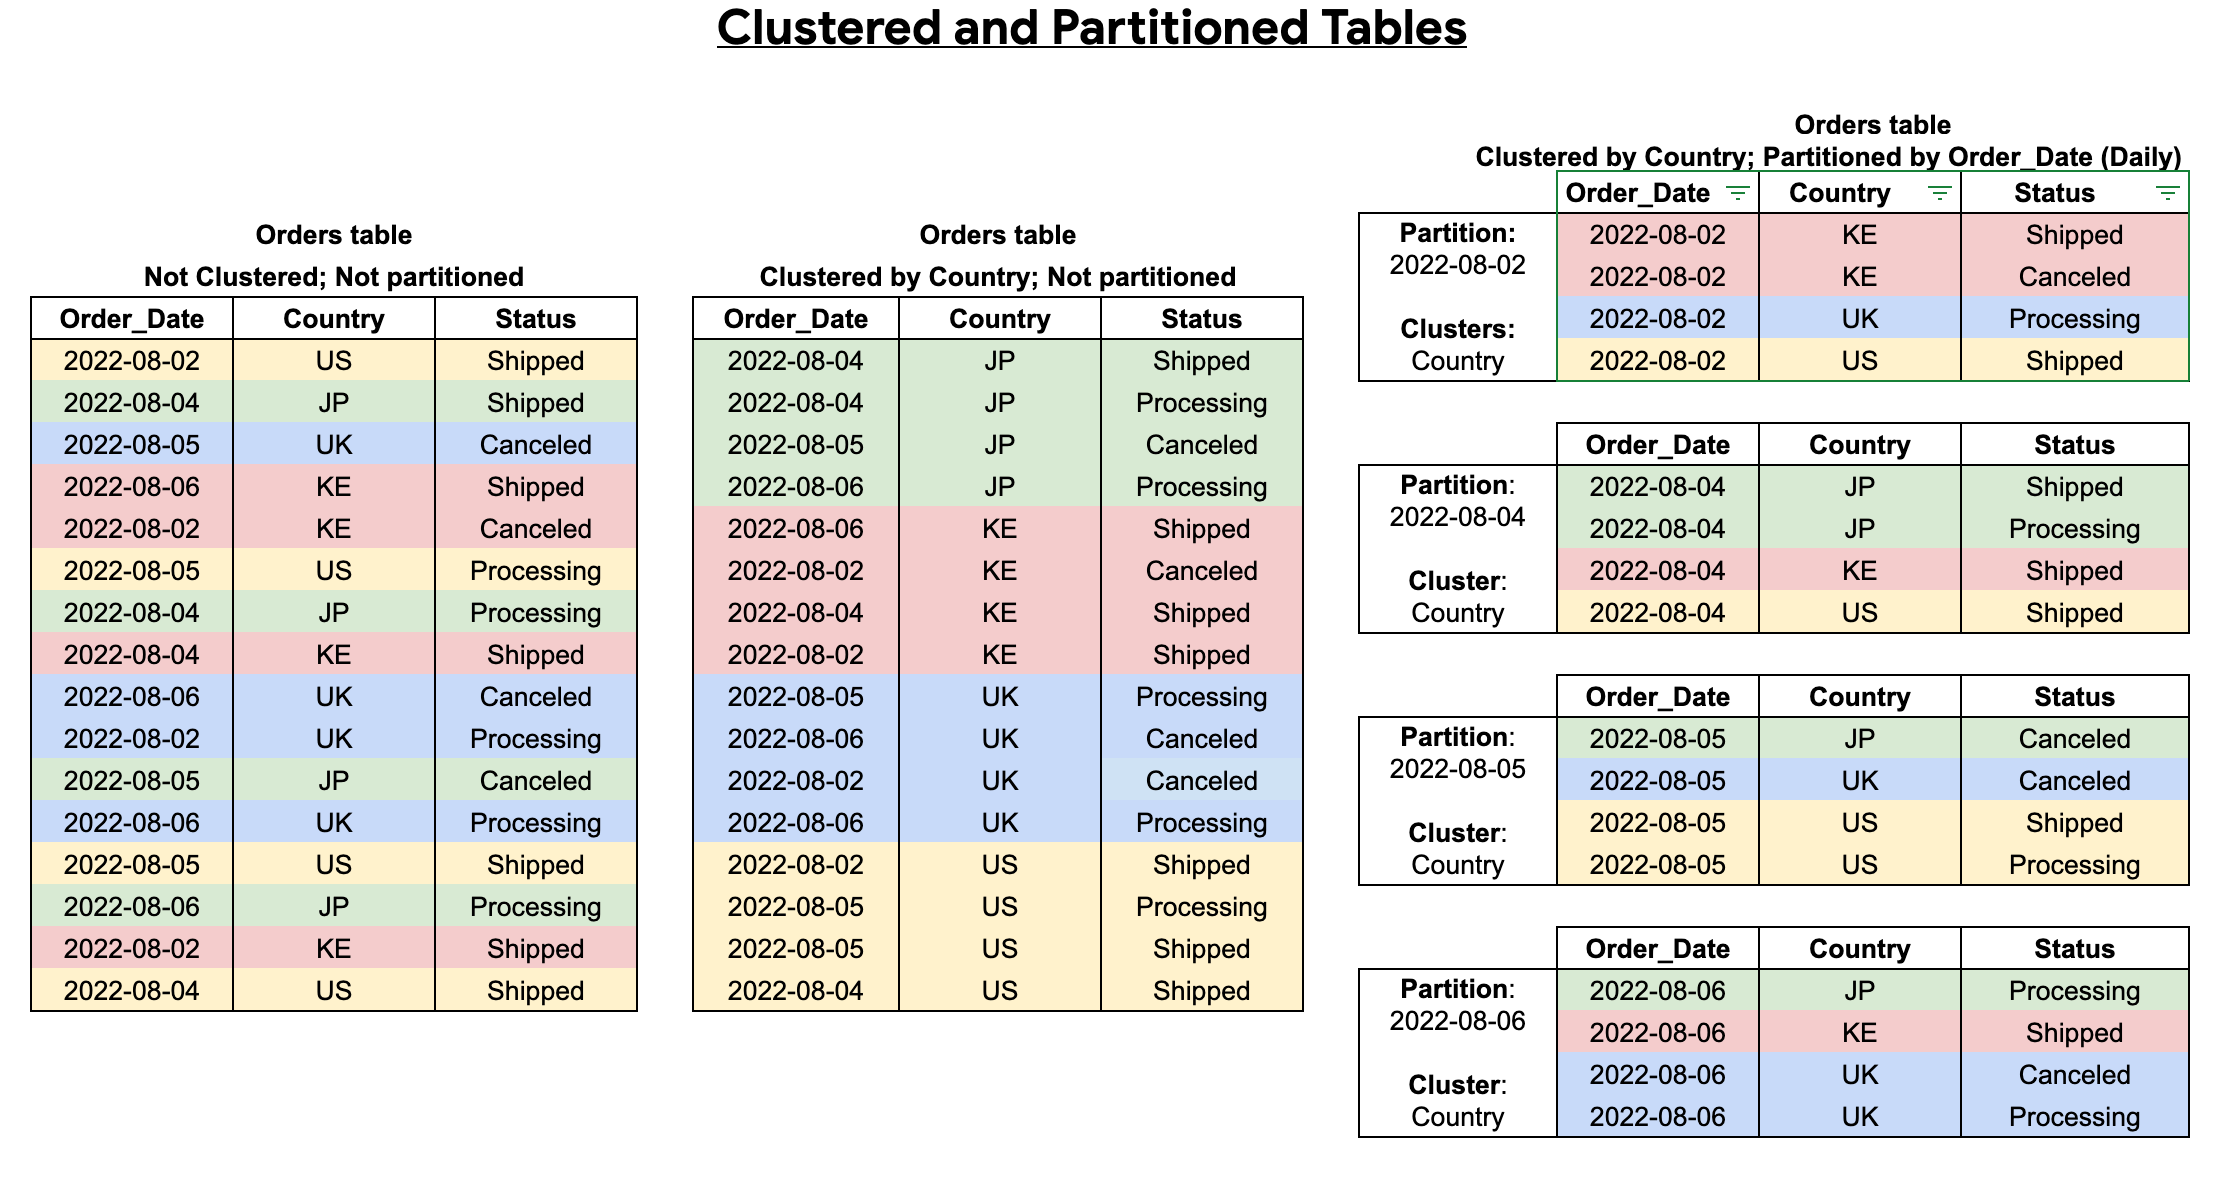 Nicht geclusterte oder partitionierte Tabellen mit Tabellen vergleichen, die geclustert und partitioniert sind.